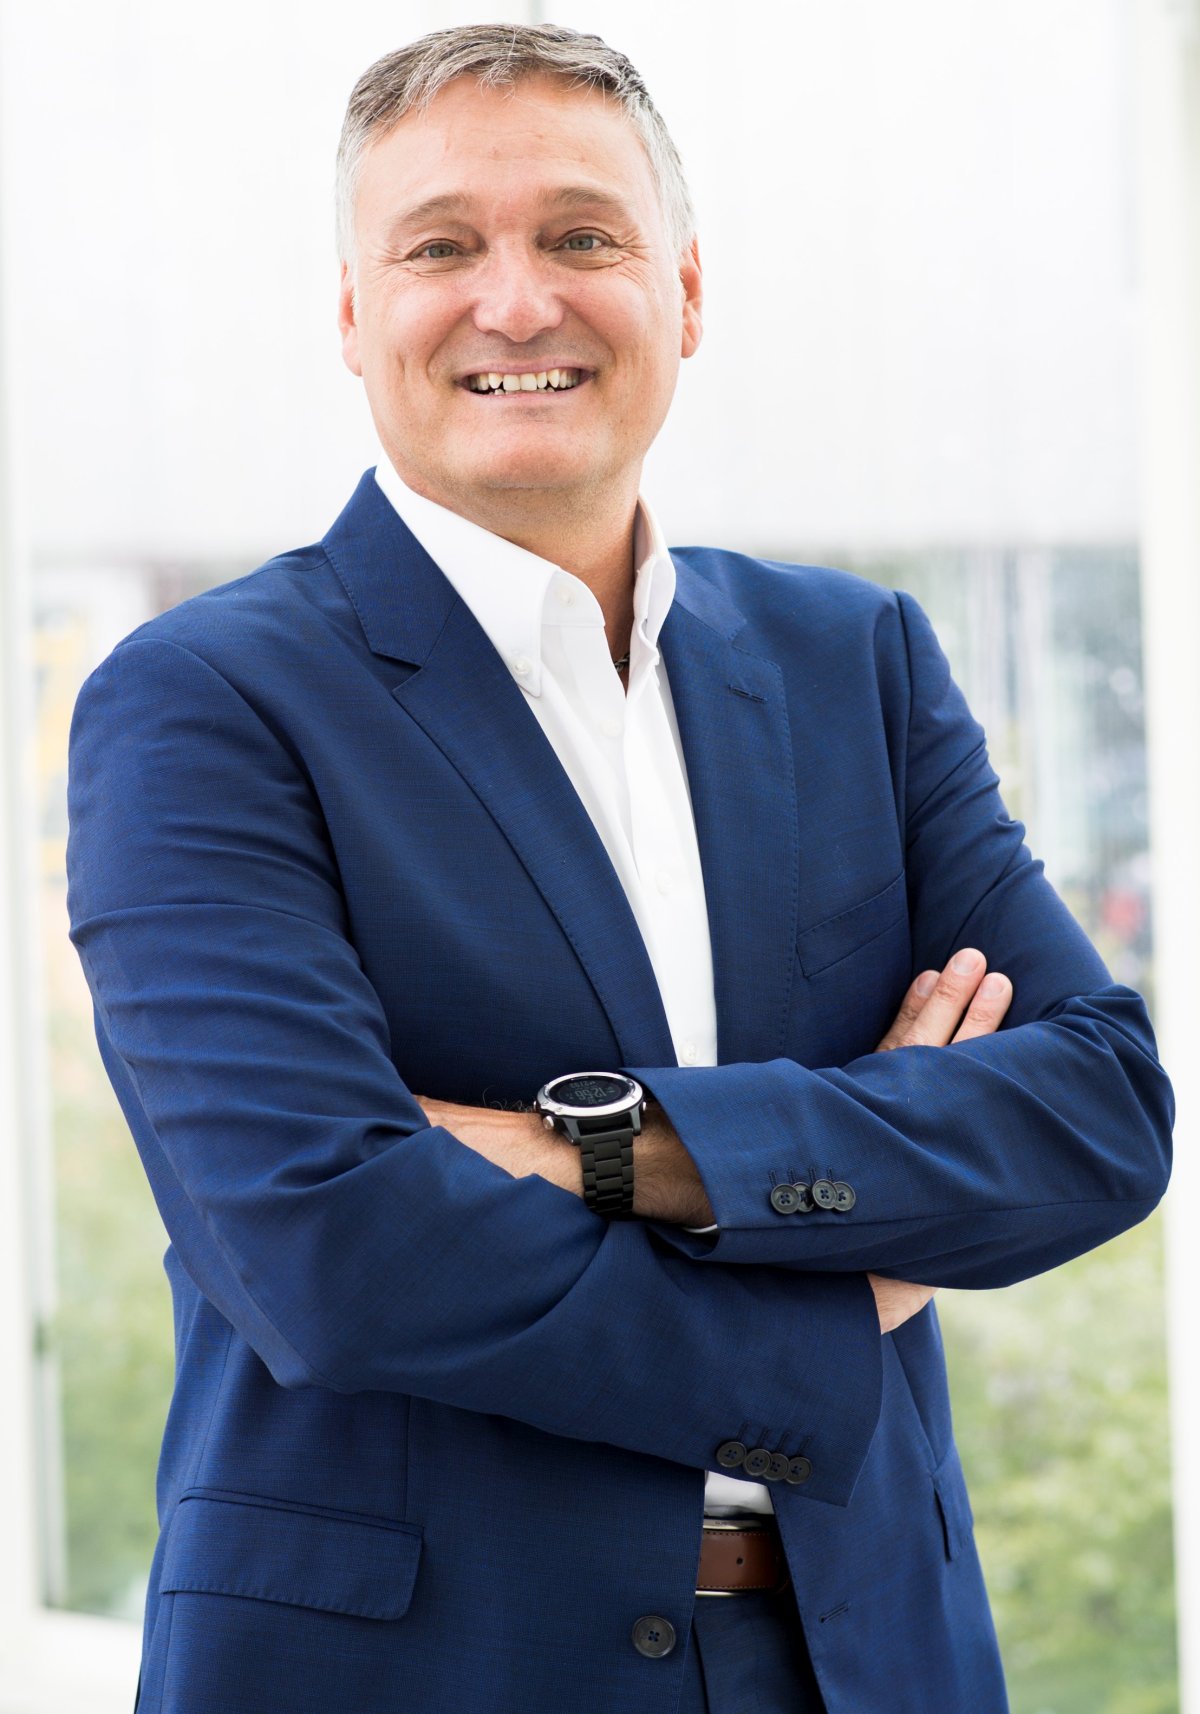 Oliver Frosch übernimmt ab 1. Januar 2022 als neuer geschäftsführender Gesellschafter und Chief Sales Officer die Vertriebsverantwortung bei Nordcap . Foto: Nordcap